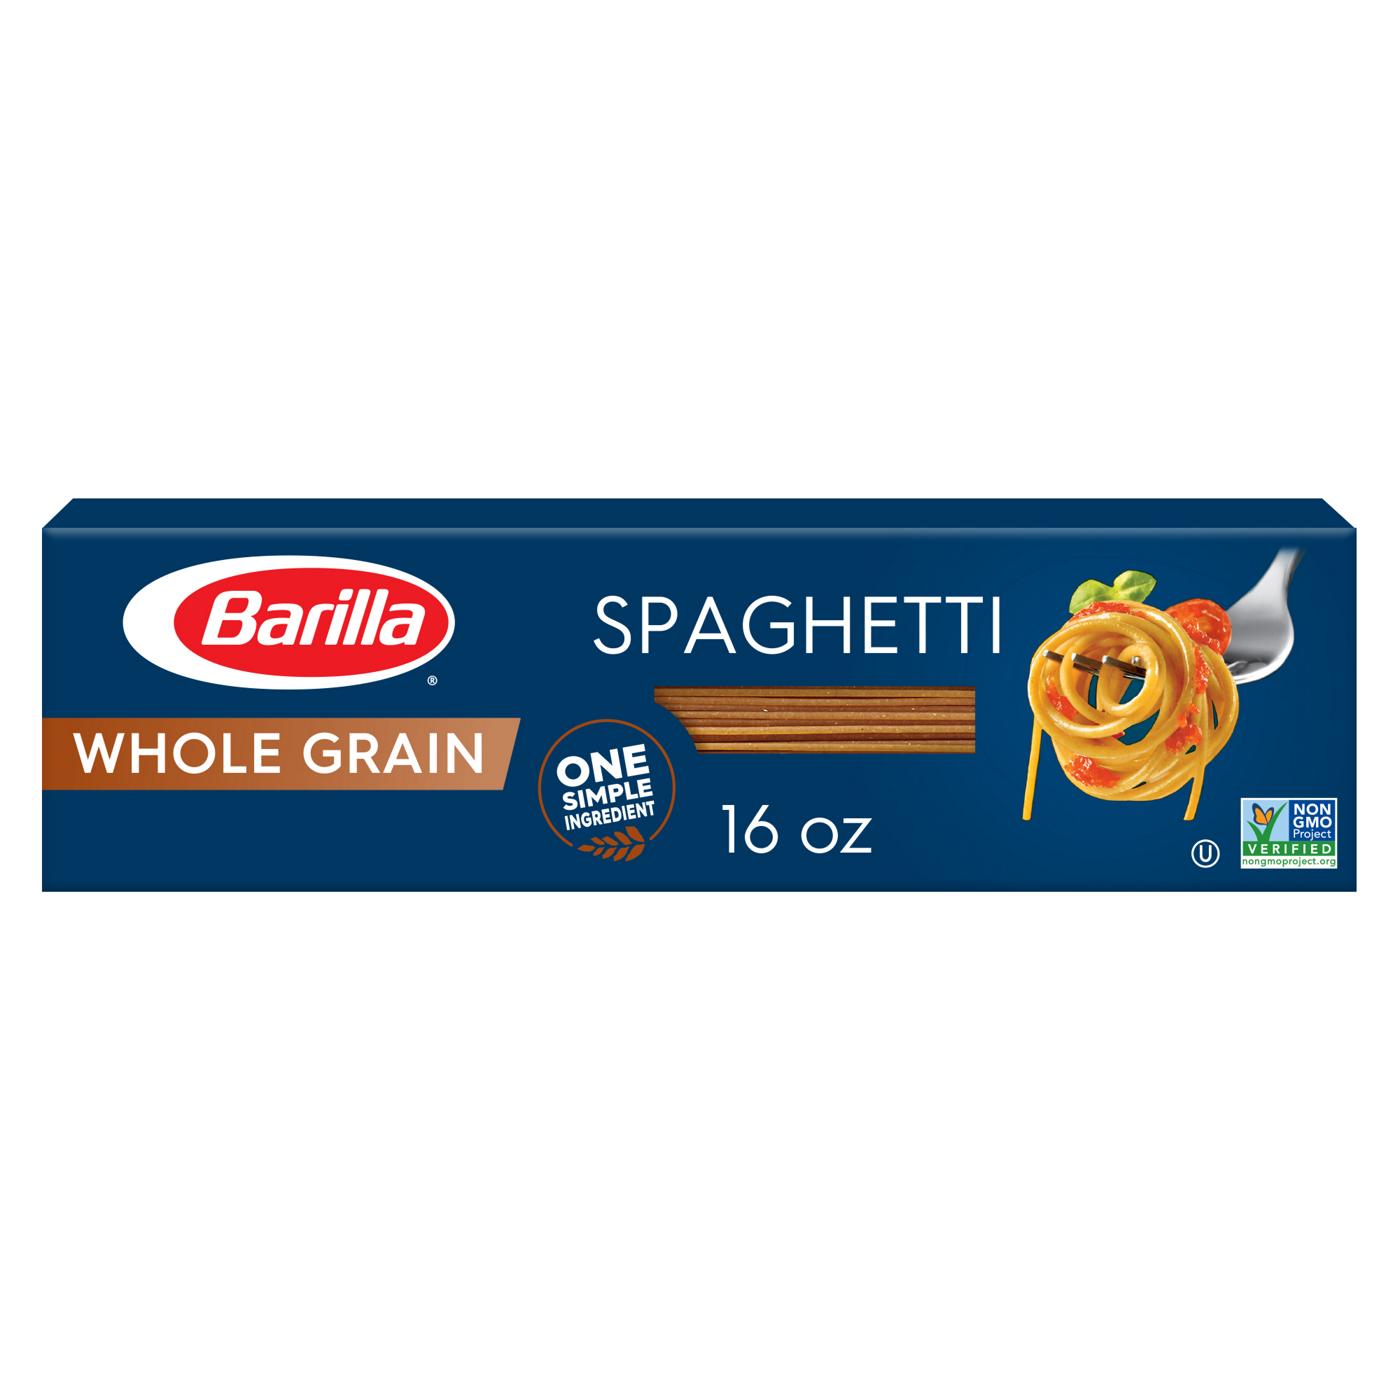 Barilla Whole Grain Spaghetti Pasta; image 1 of 8